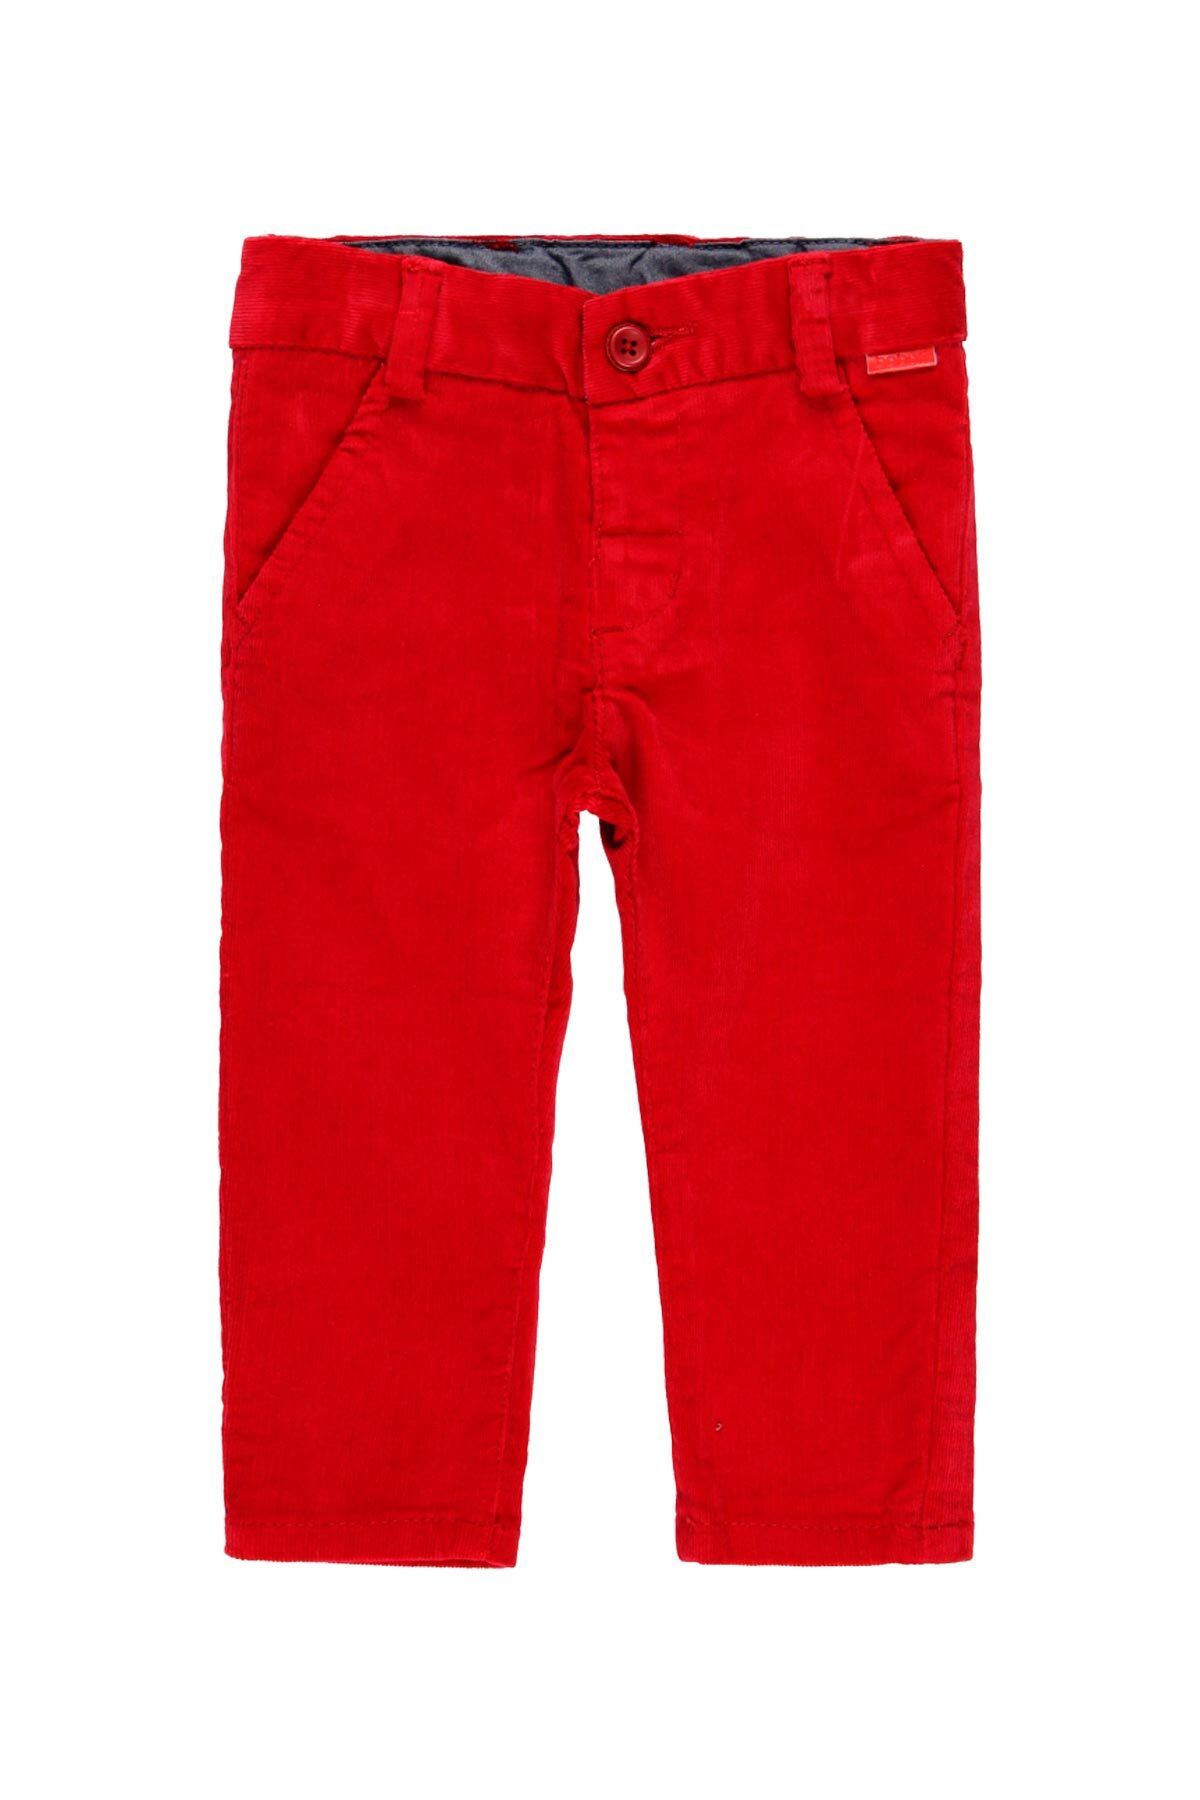 Boboli Erkek Çocuk Pantolon Kırmızı